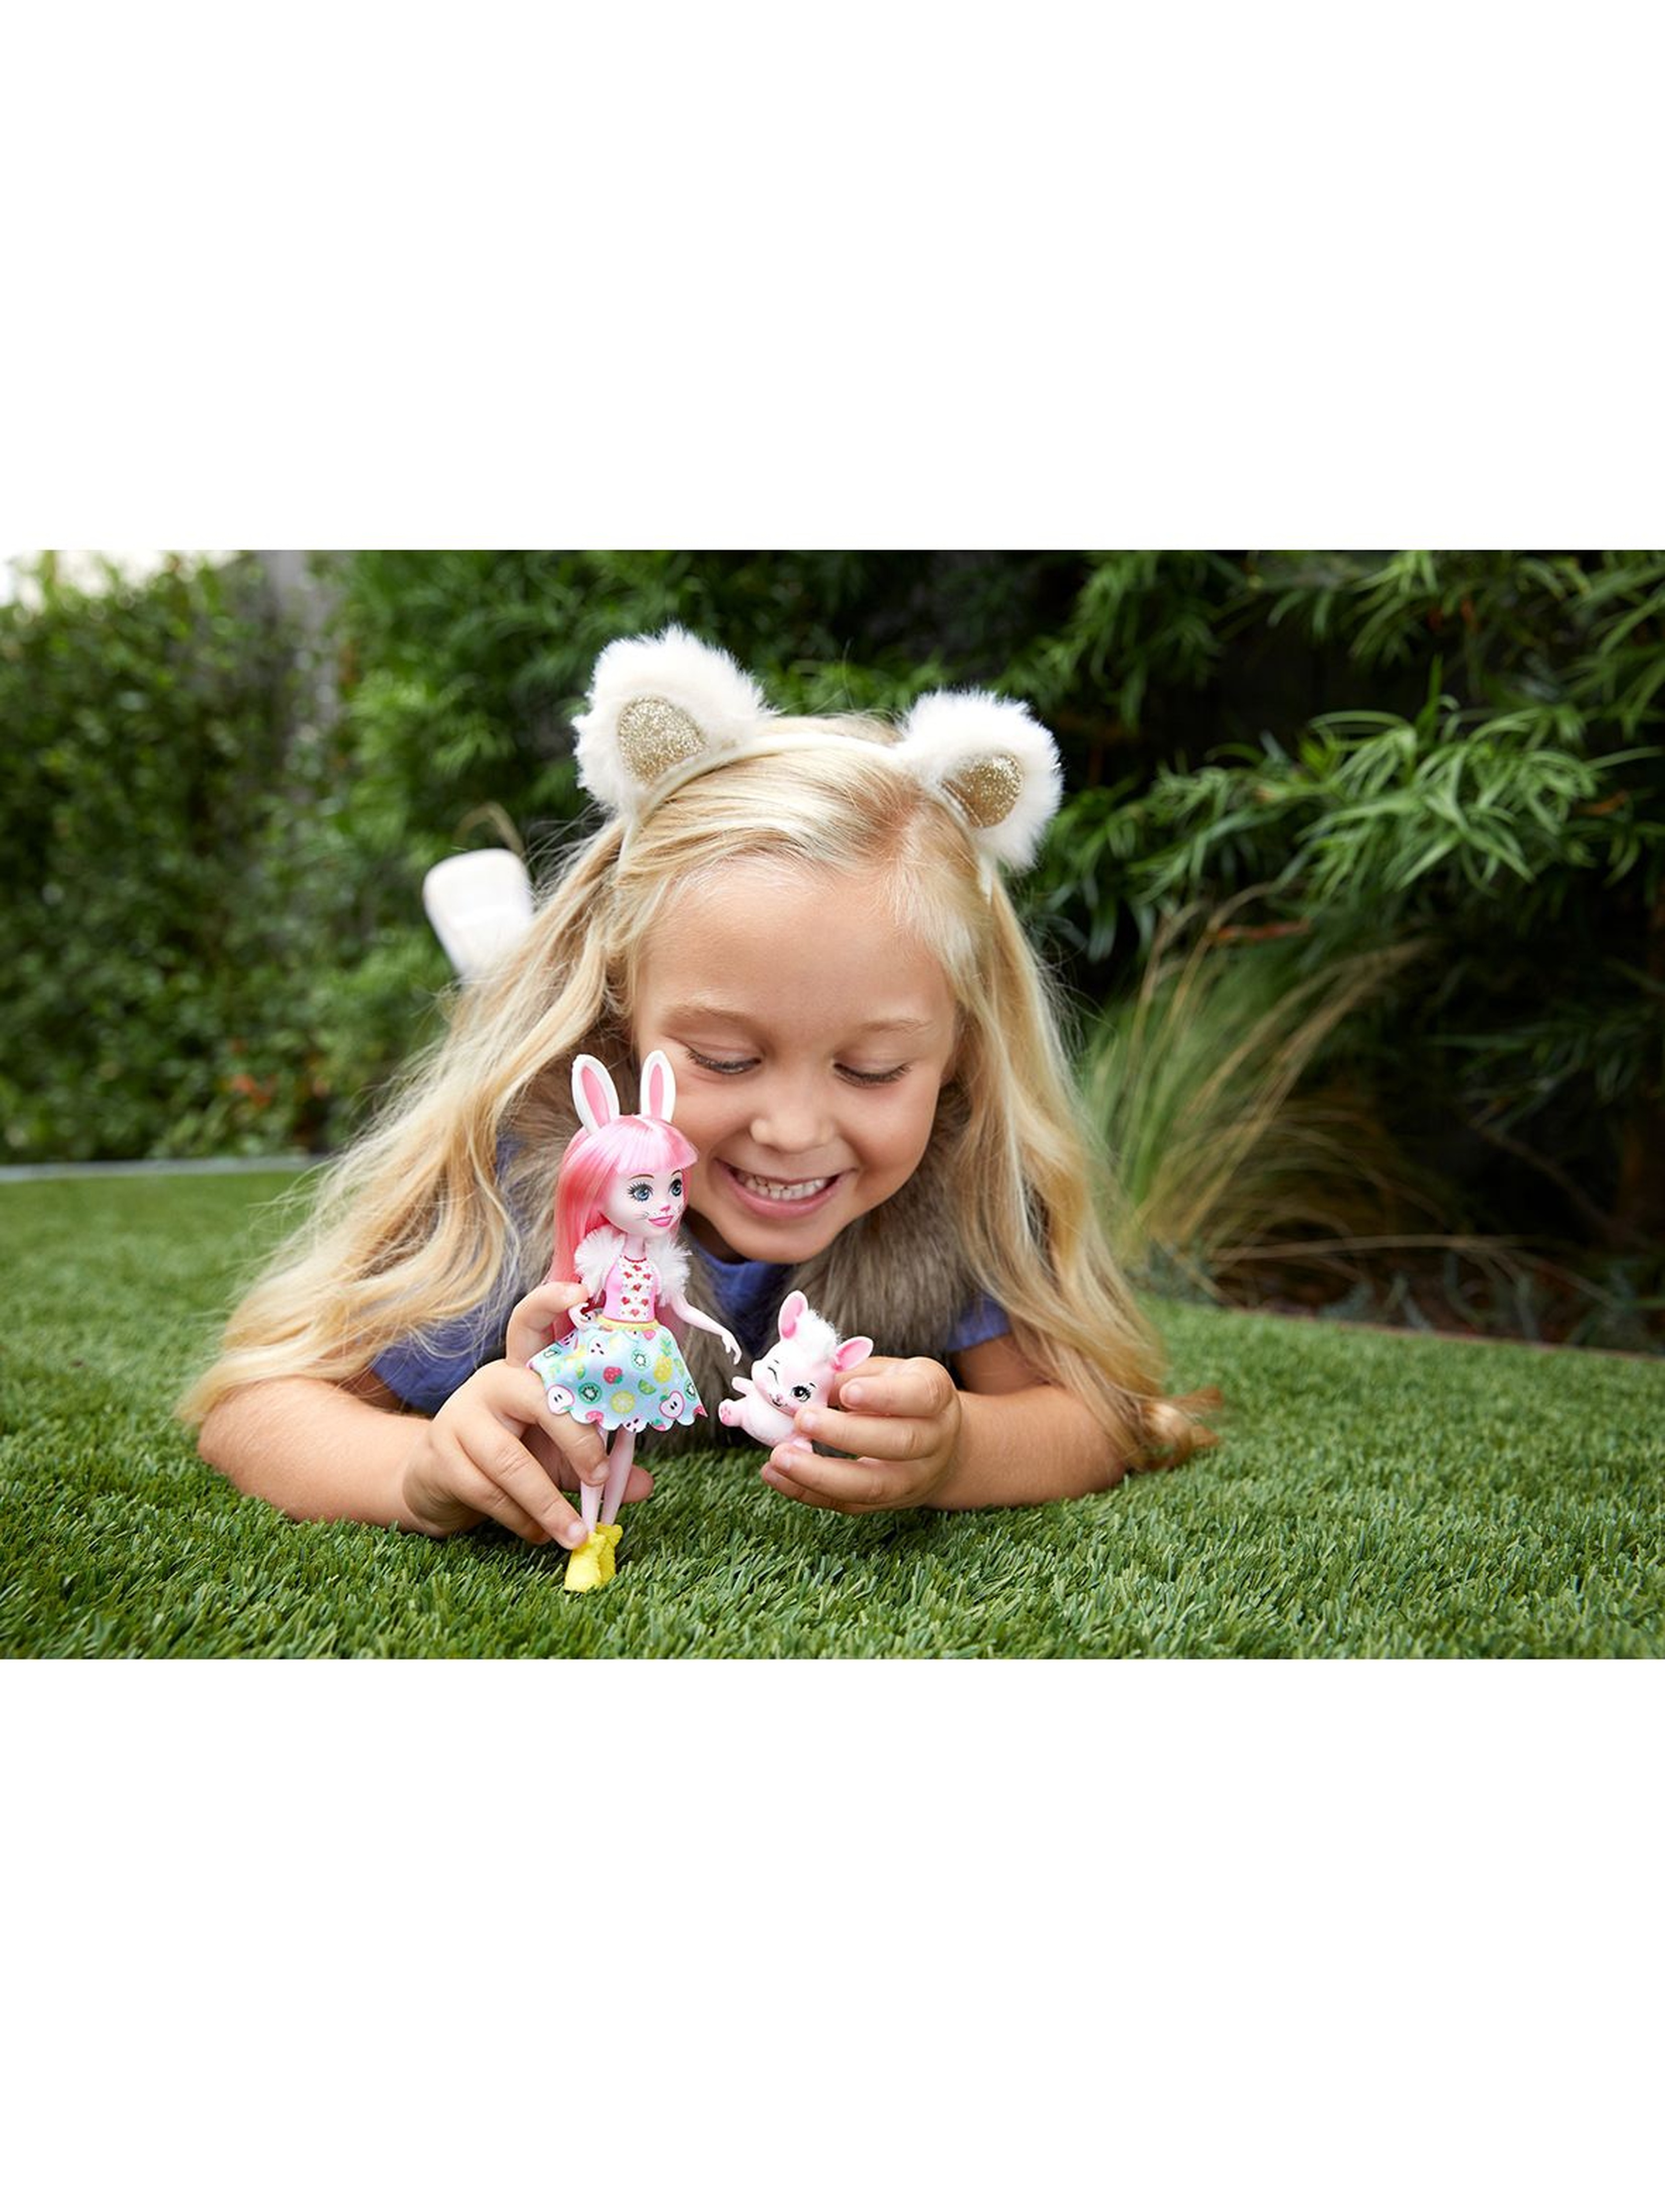 Enchantimals Lalka Bree Bunny + króliczek Twist figurka 4+